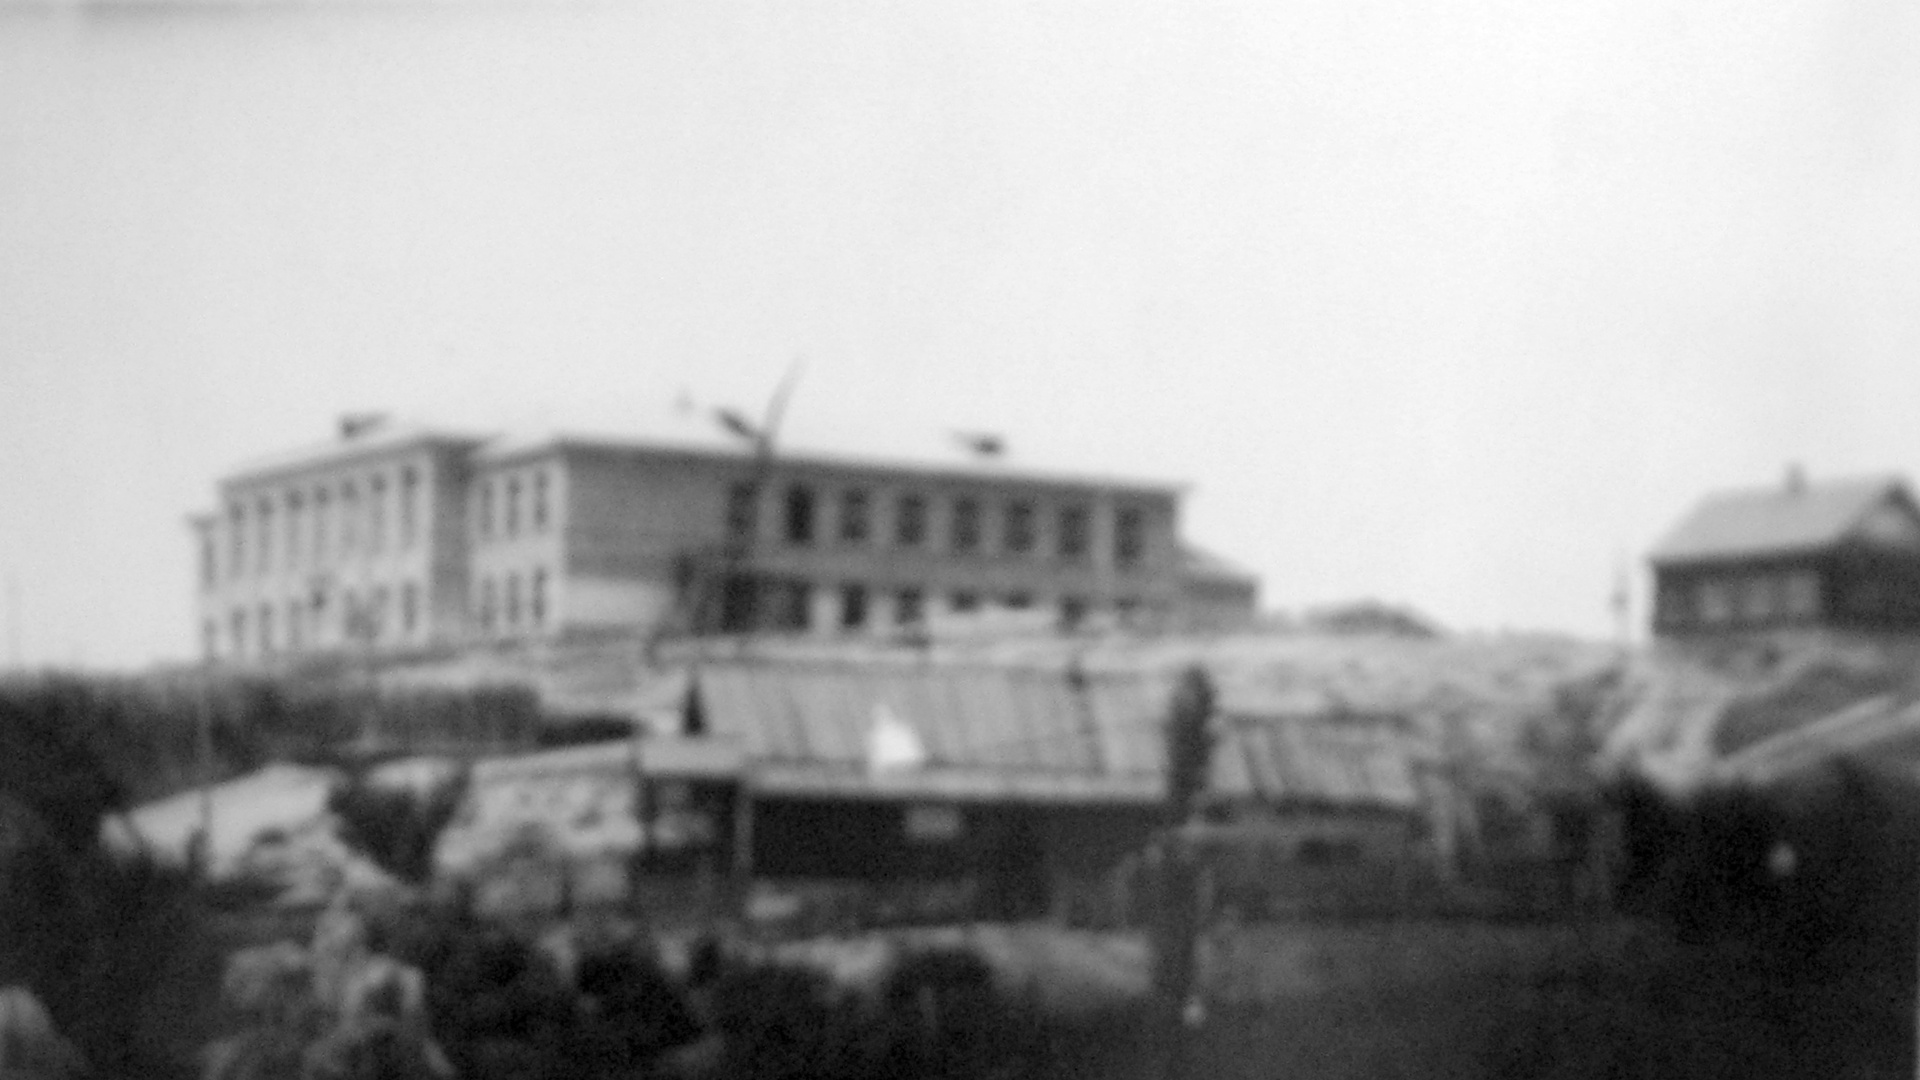 Средняя школа № 1 (18) города Октябрьска (Батраки–пристань). 1960 г. Завершение строительства нового здания школы.